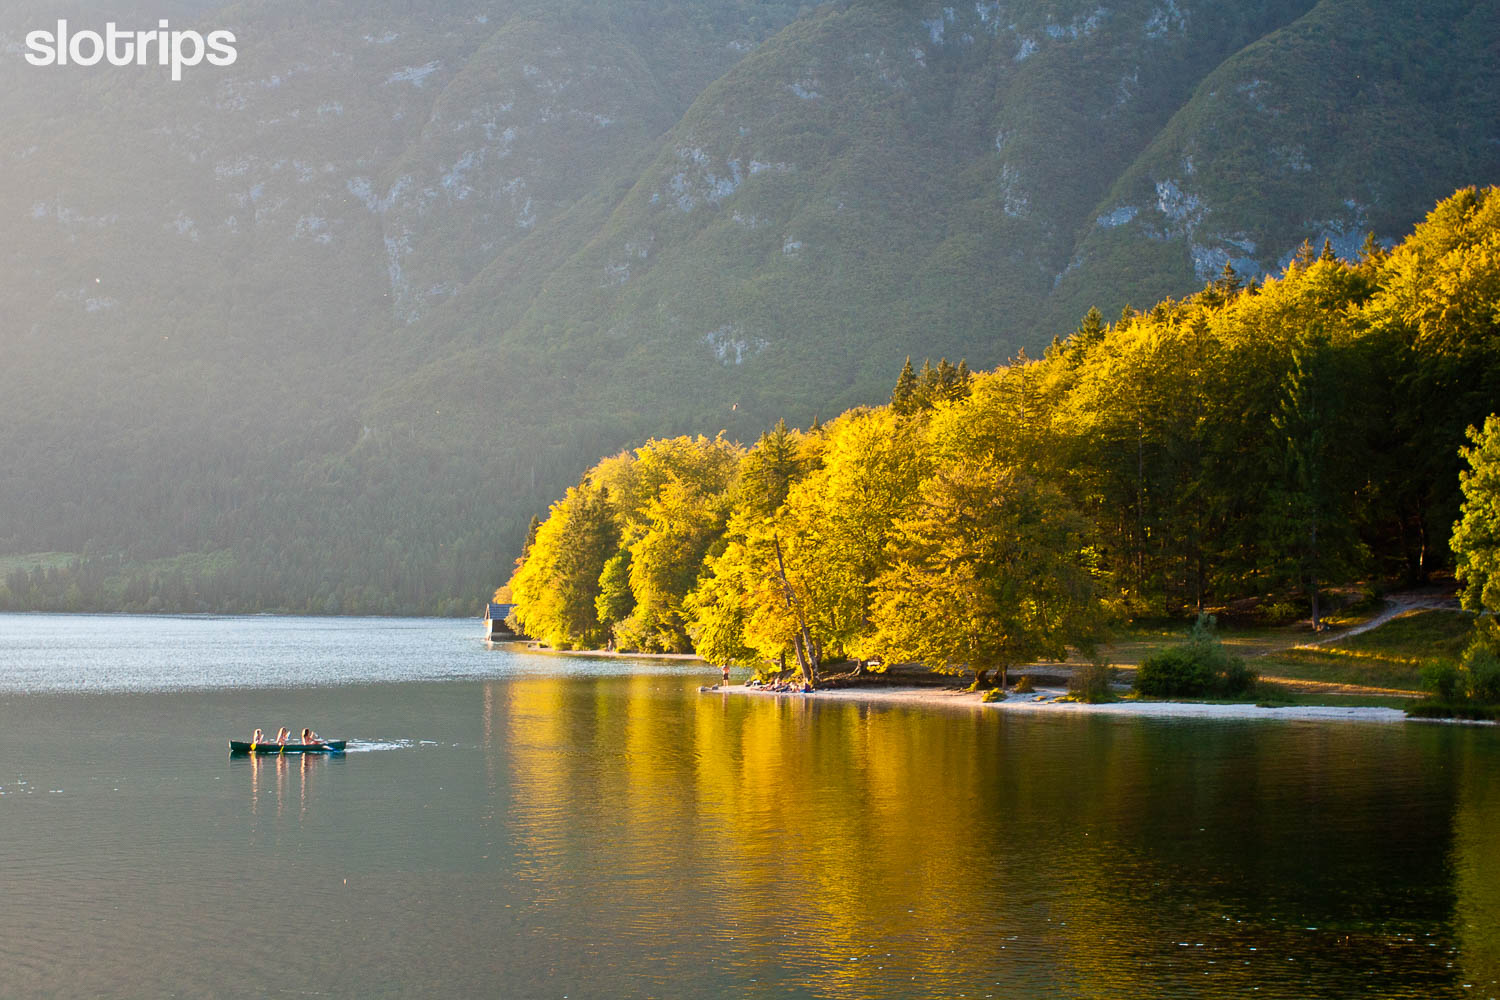 A family on a canoe trip across Lake Bohinj on a sunny autumn day